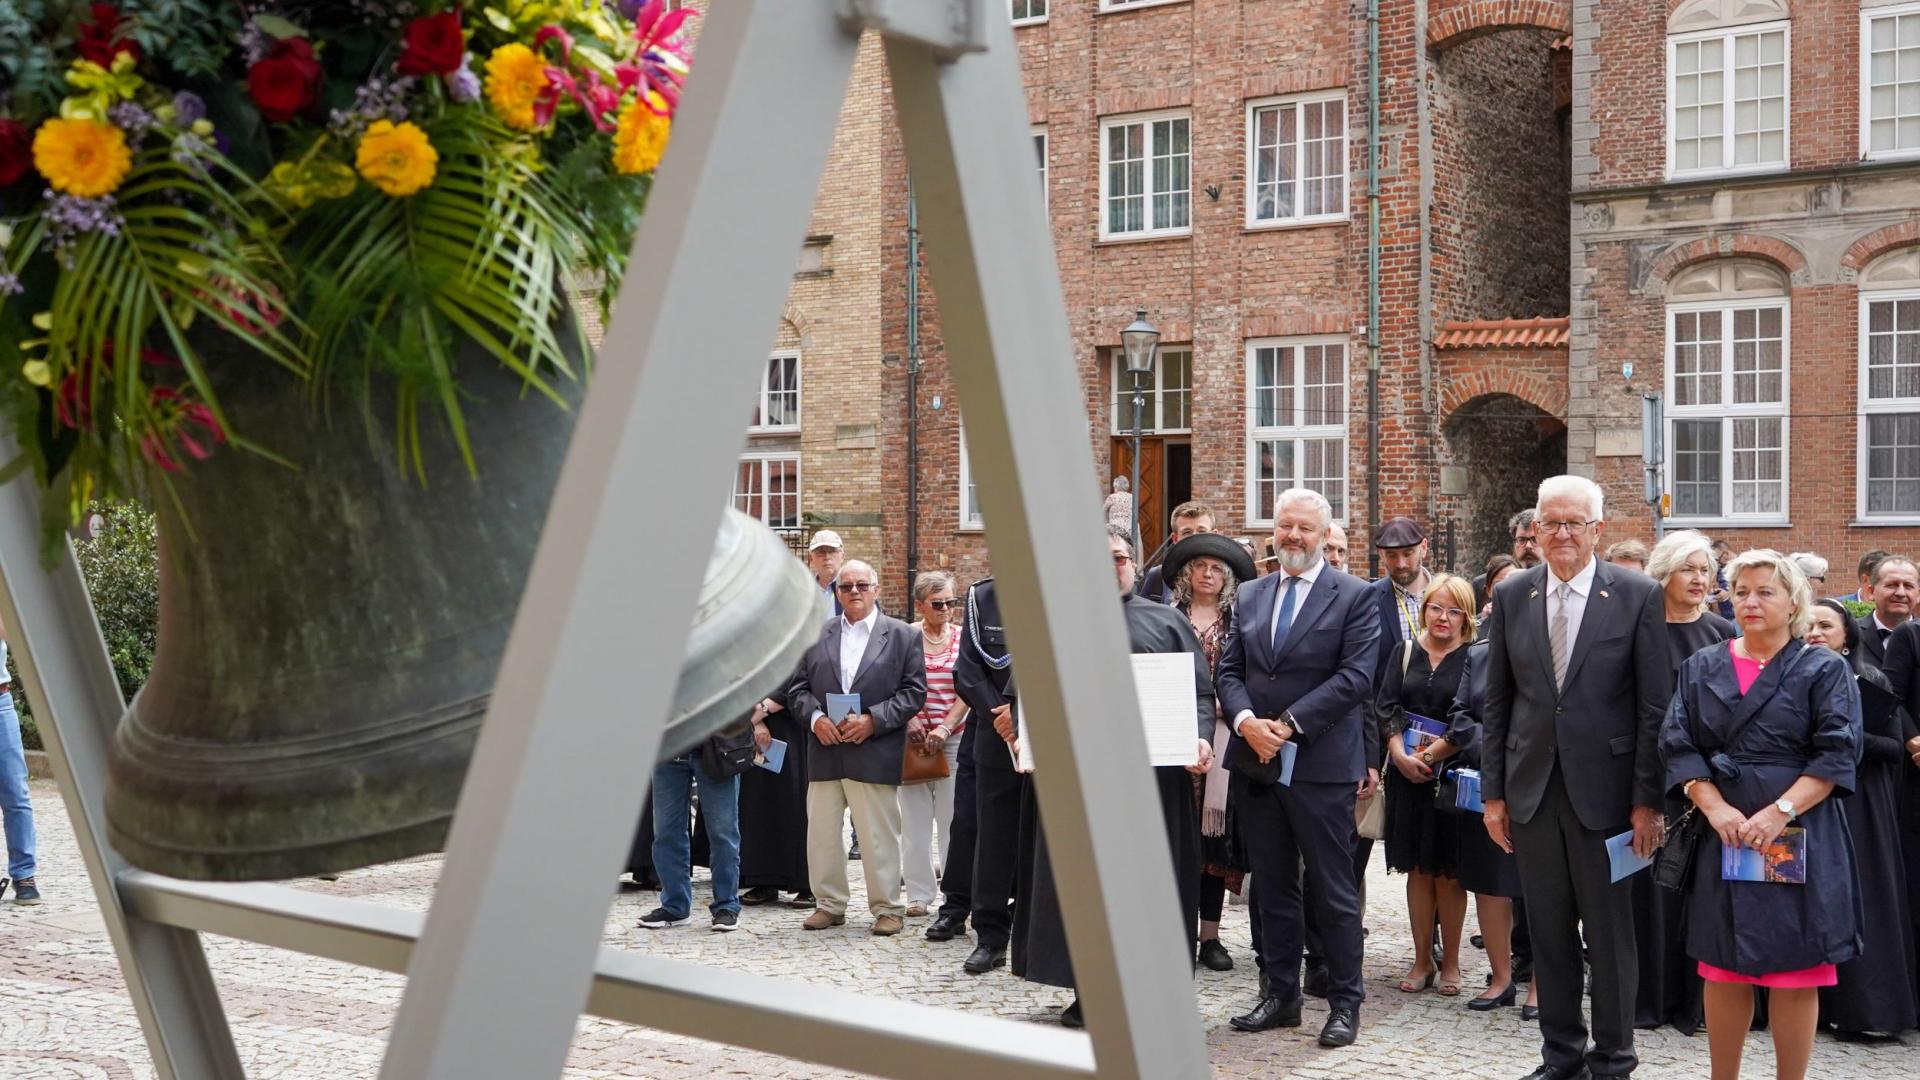 Baden-Württembergs Ministerpräsident Winfried Kretschmann bei der feierlichen Übergabe einer im Zweiten Weltkrieg von Deutschen gestohlenen Glocke in der polnischen Stadt Elblag.